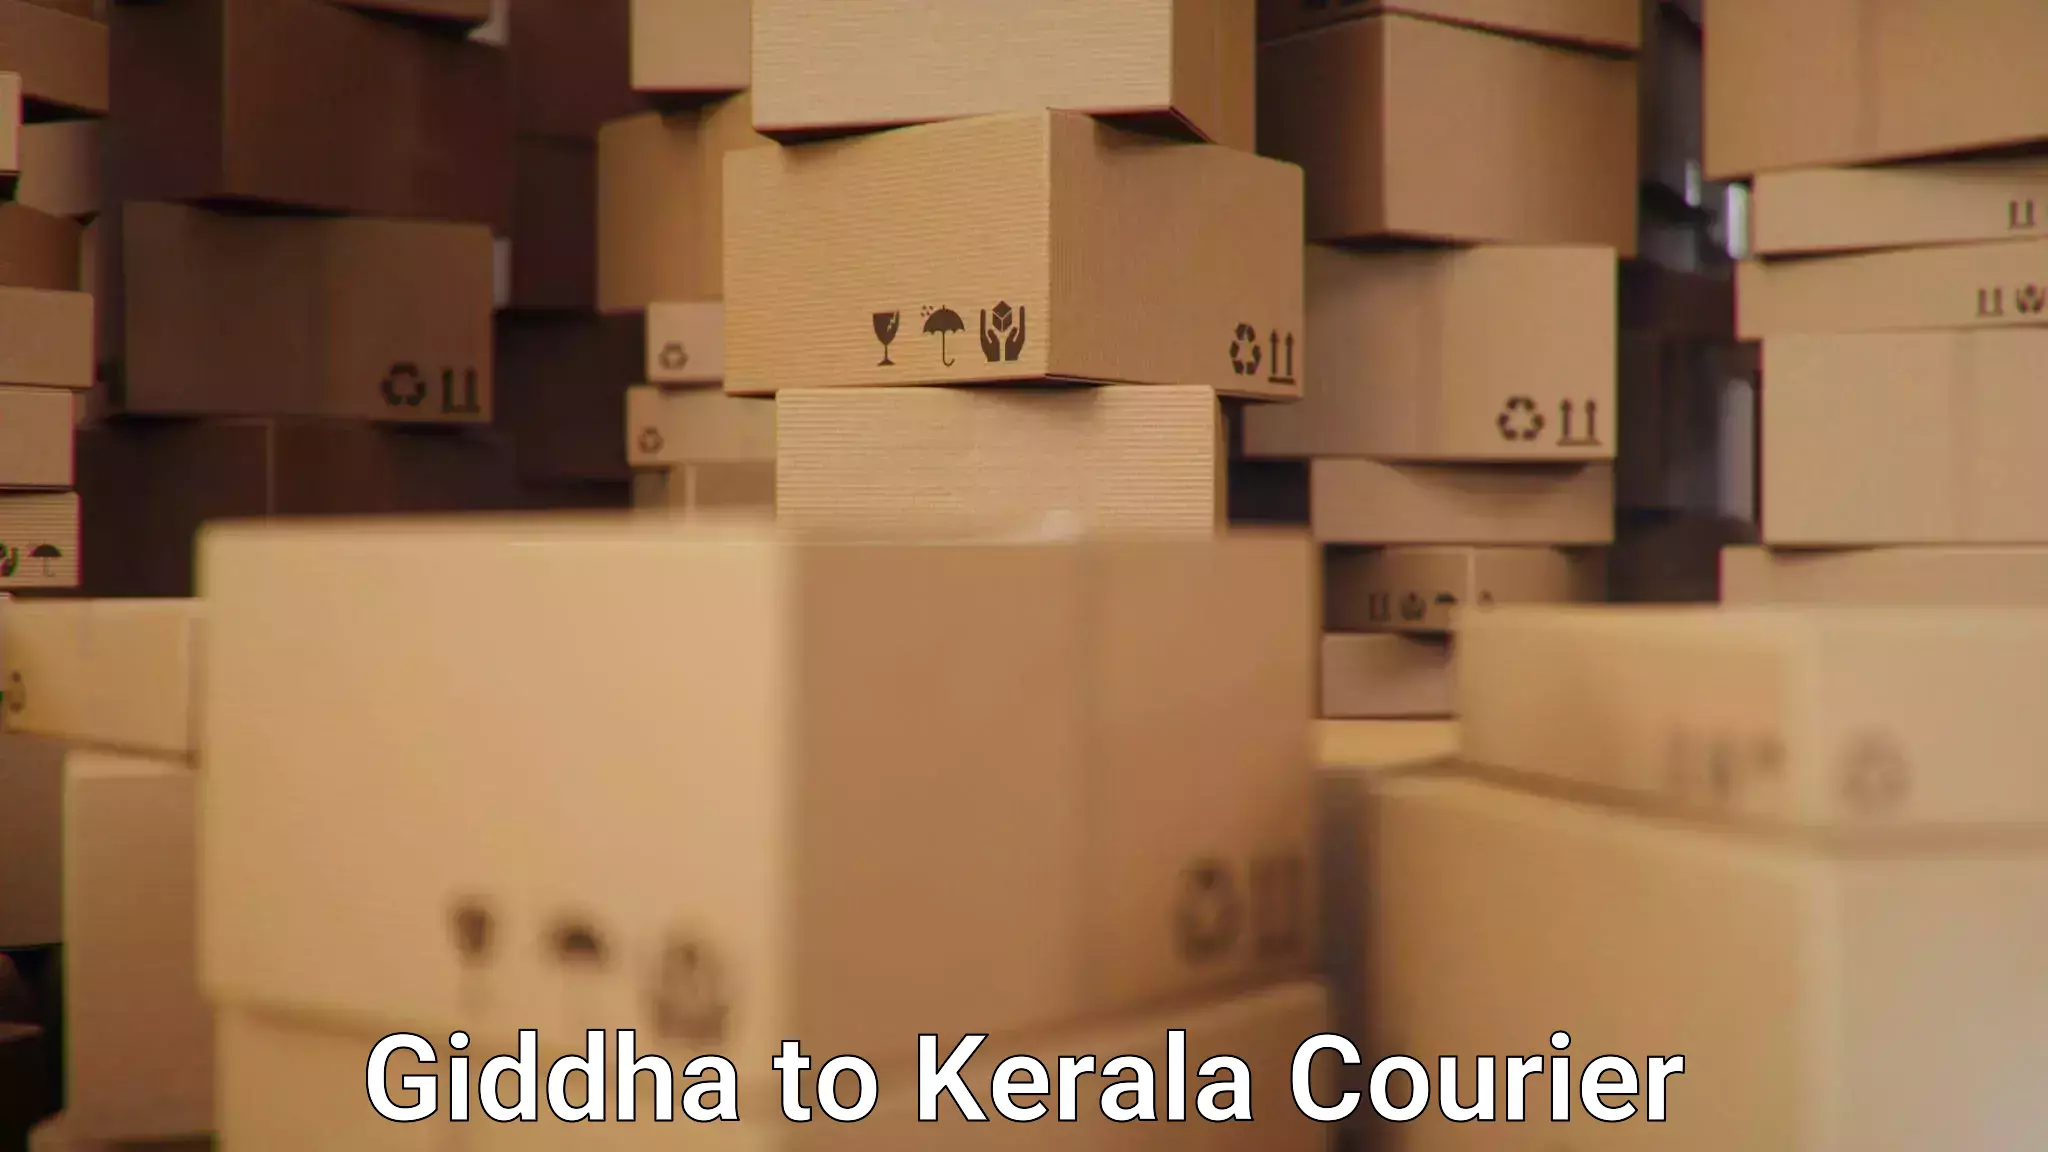 24-hour delivery options Giddha to IIIT Kottayam